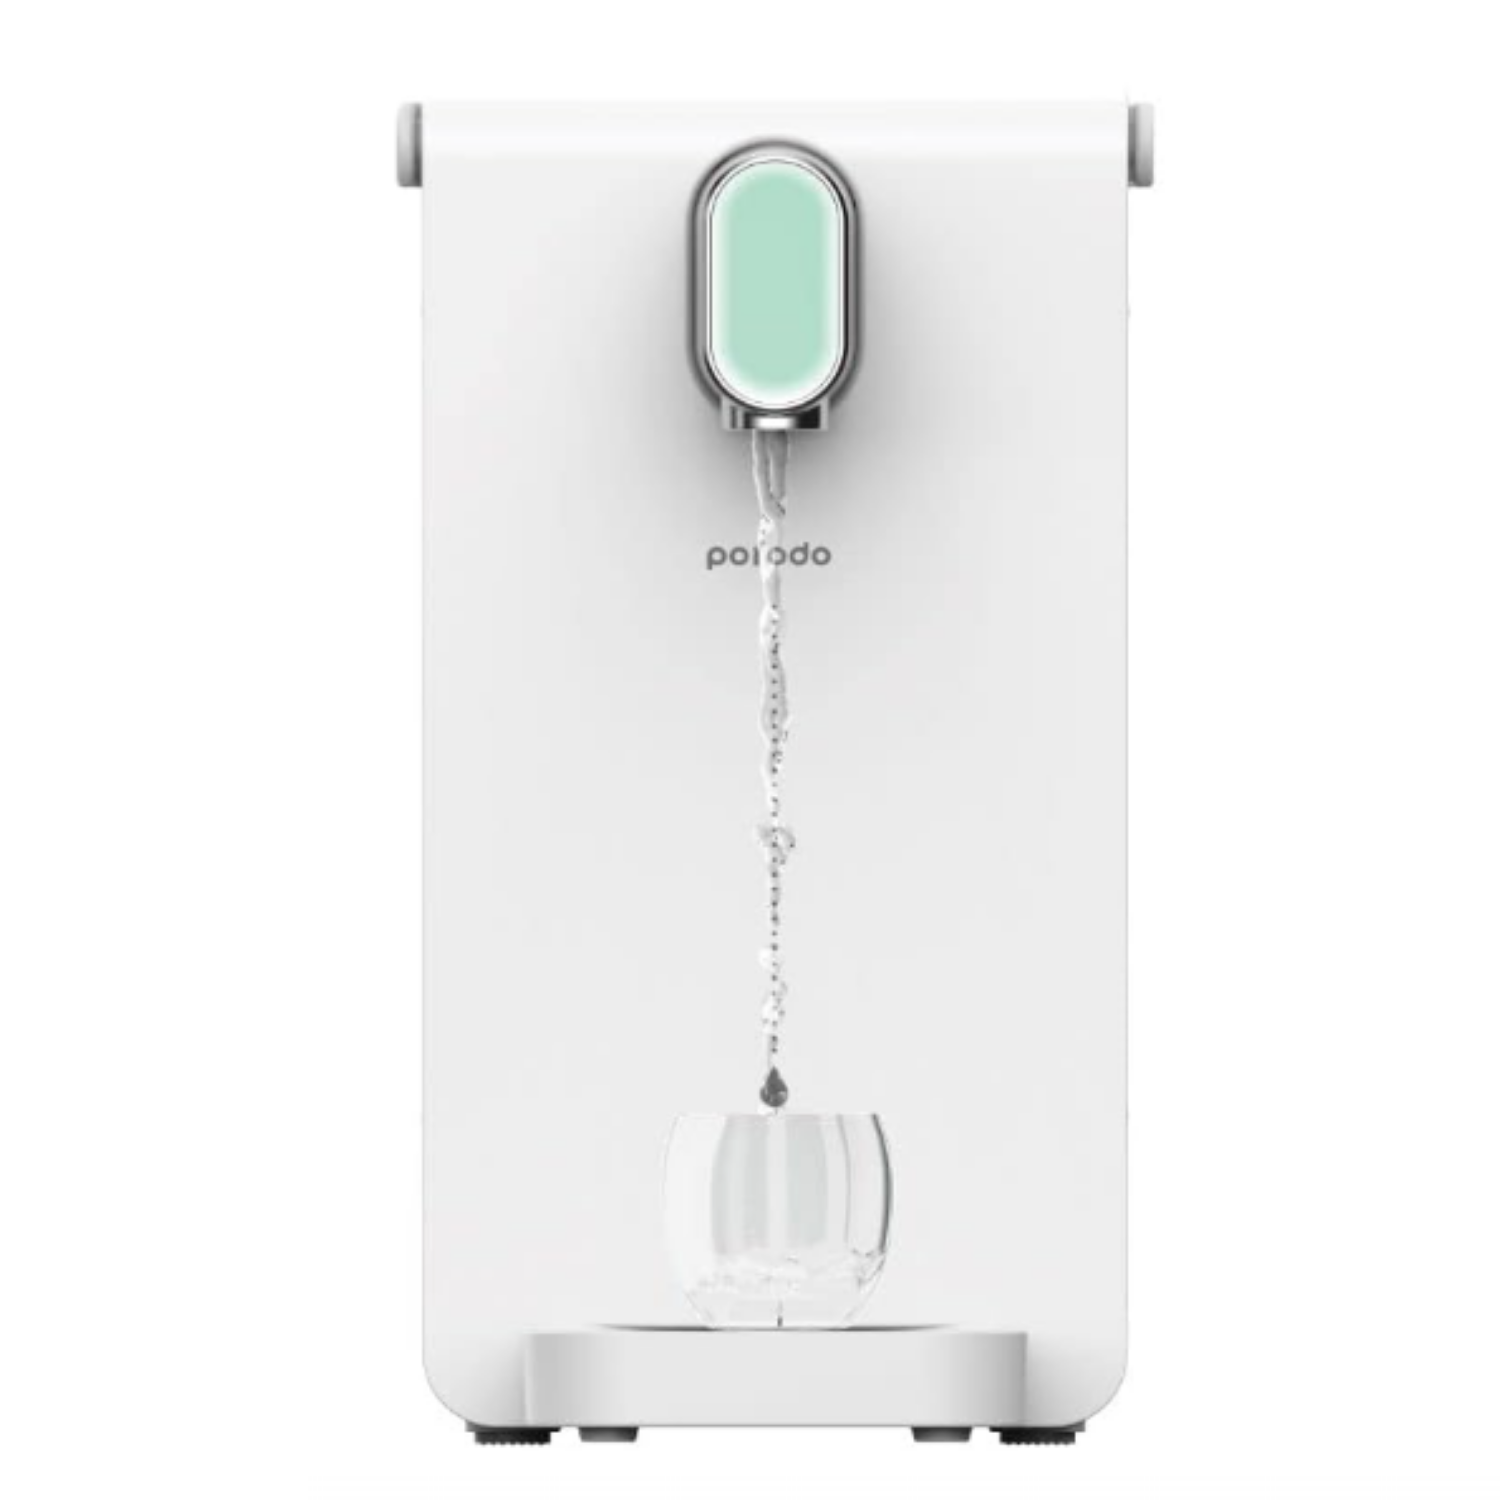 غلاية ماء كهربائية فورية بورودو Porodo Instant Hot Water Dispenser